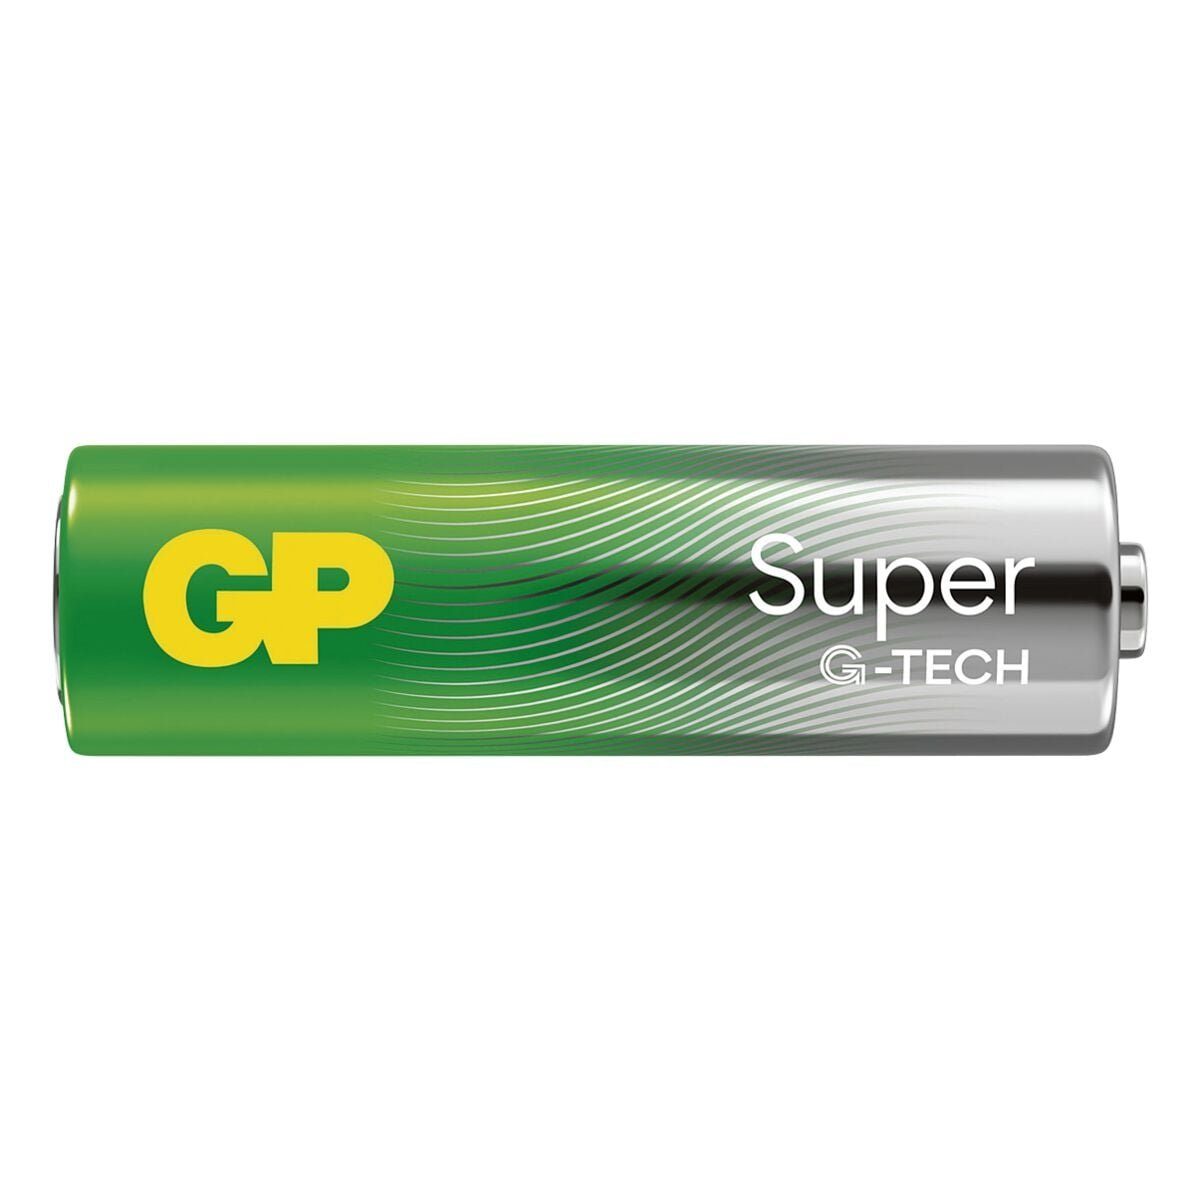 GP Batteries Super Alkaline Batterie, V, / LR6, 16 / 1,5 Alkali LR06 Mignon AA St), V, / (1.5